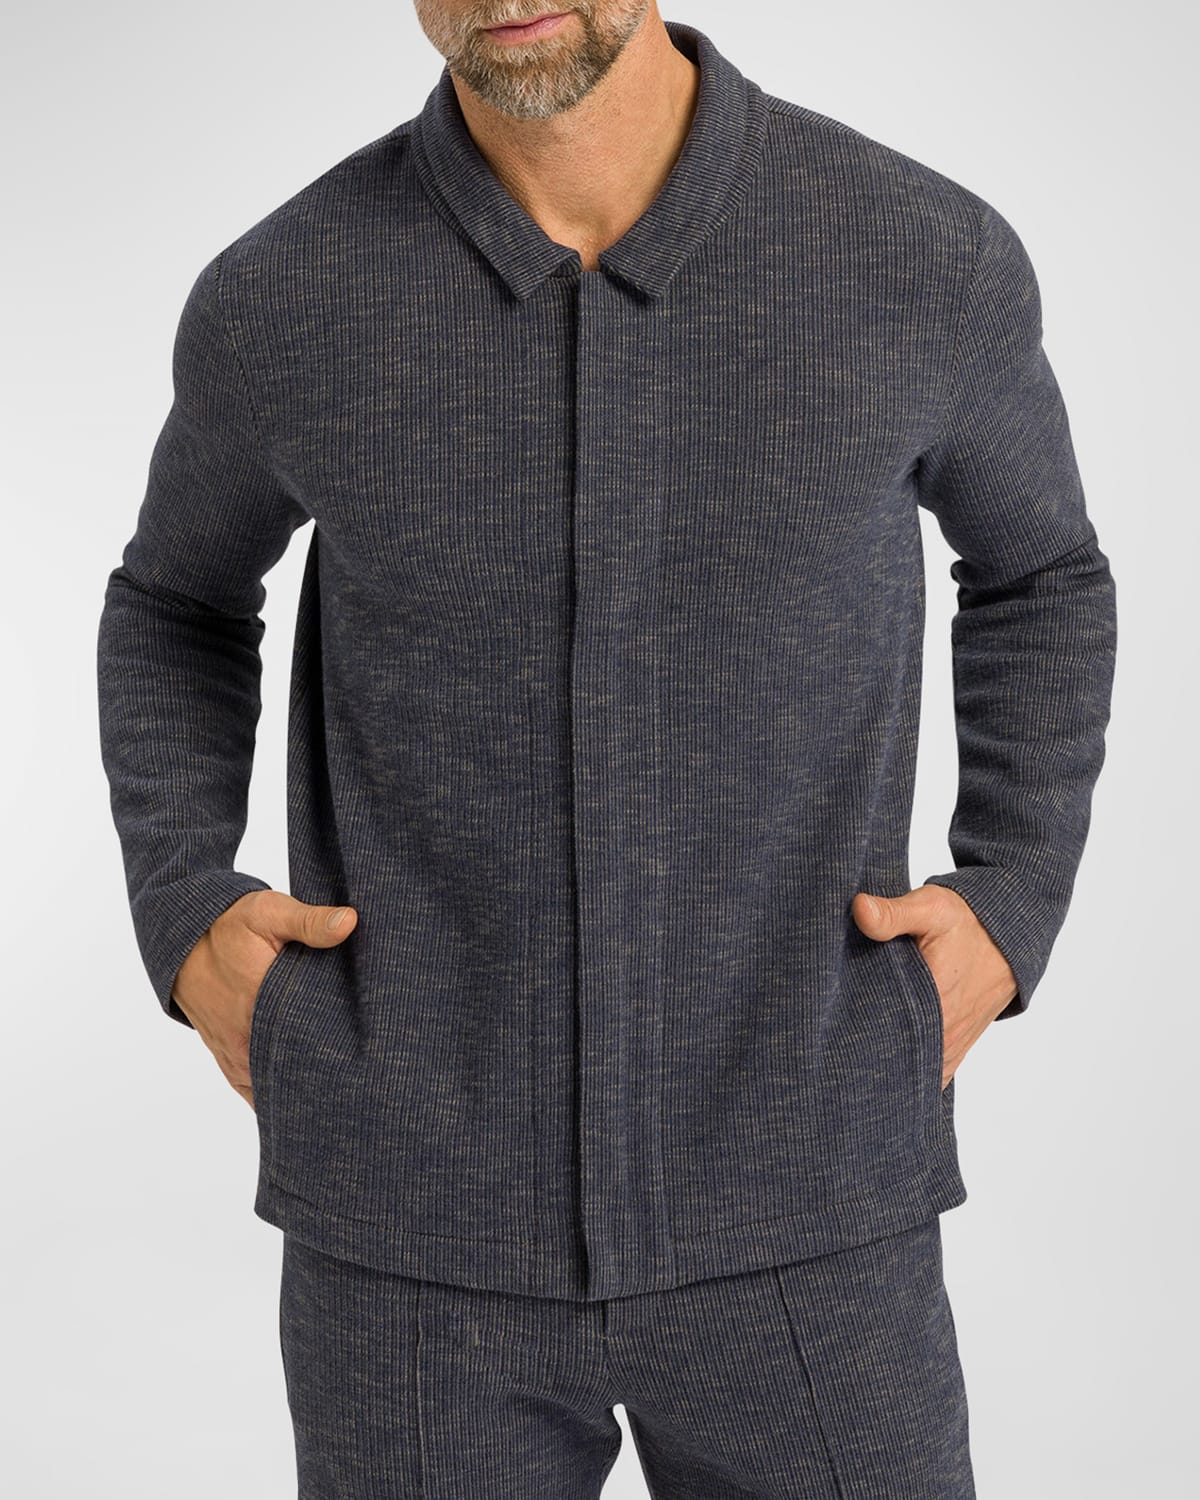 Men's Smartwear Cotton Zip Jacket